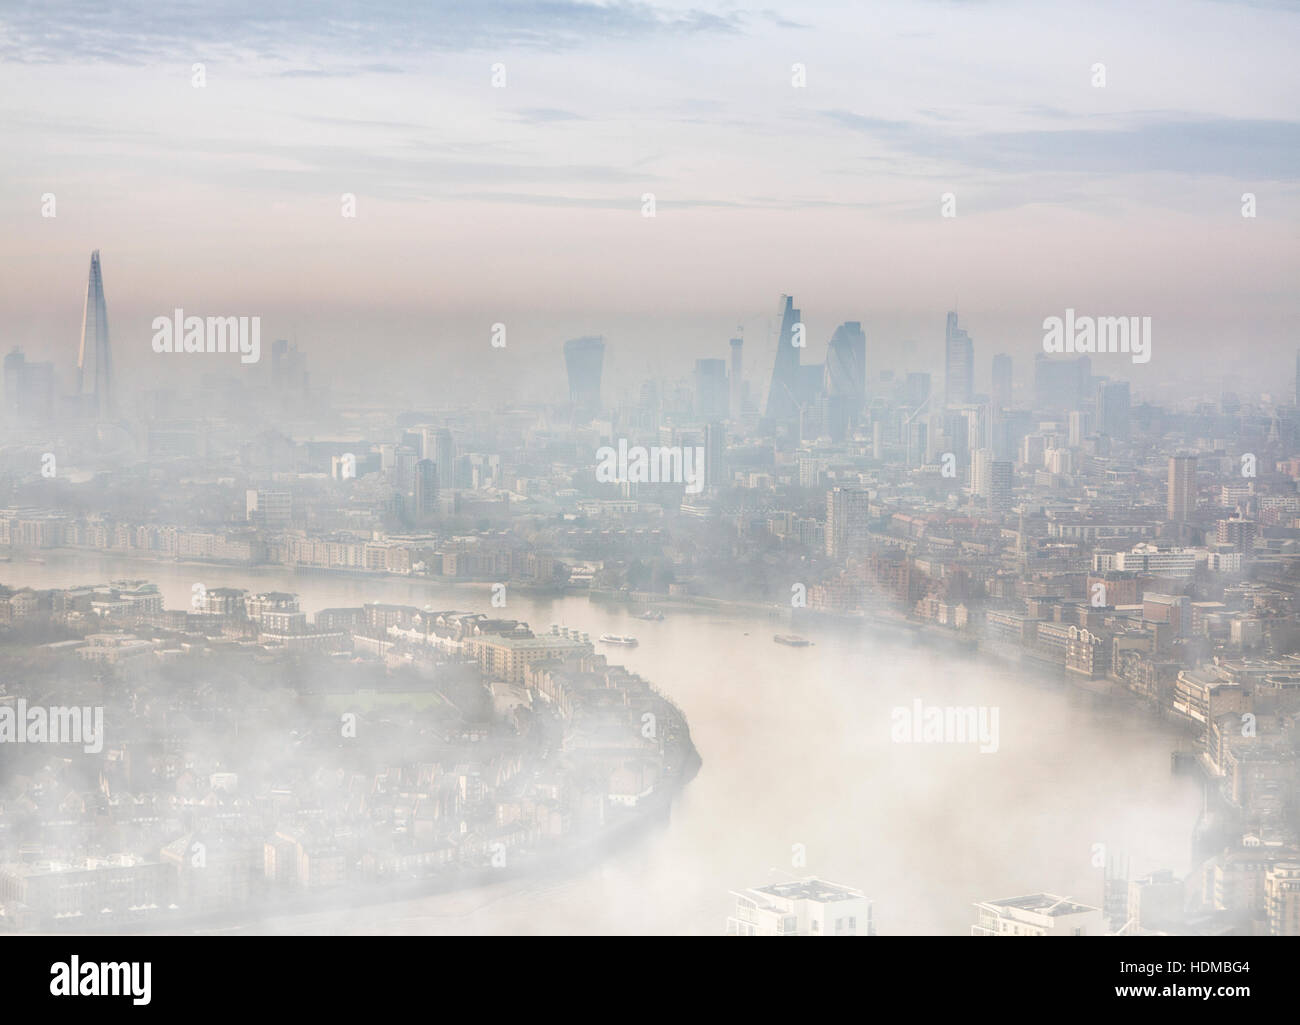 La haute finance sur un jour brumeux la City de Londres, le quartier financier de Canary Wharf dans les Docklands au crépuscule Banque D'Images